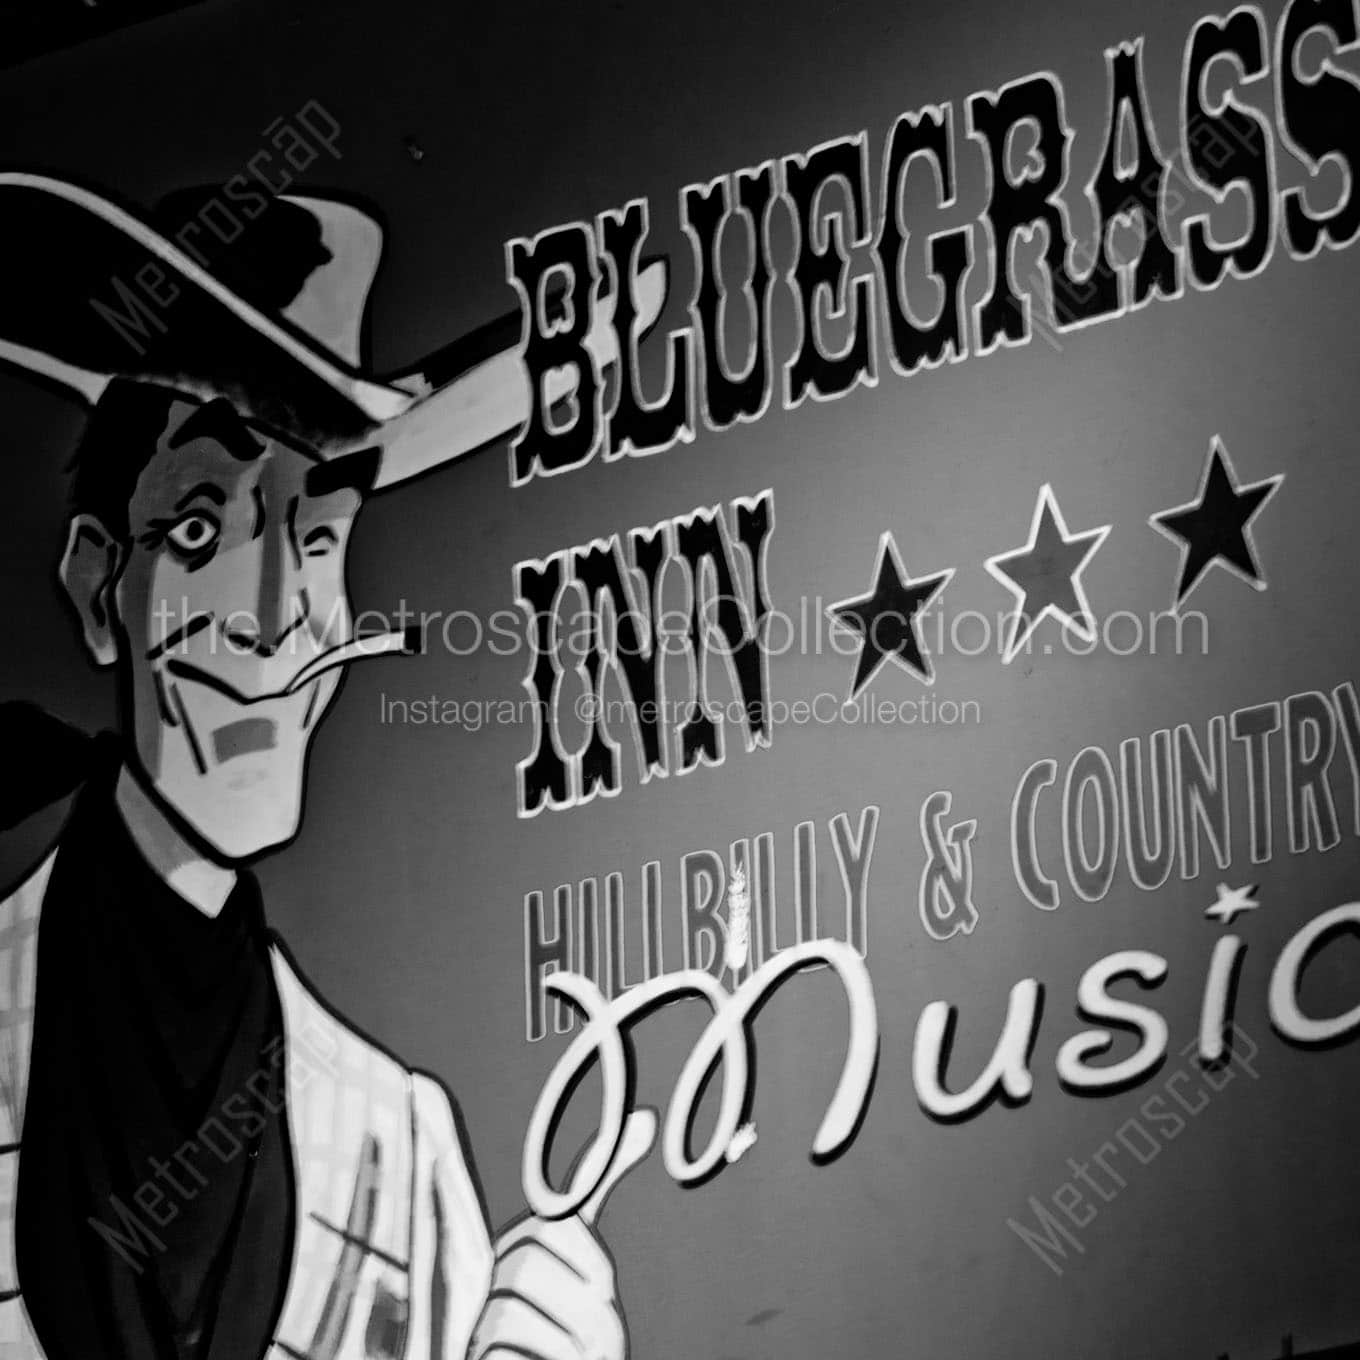 bluegrass inn sign Black & White Office Art